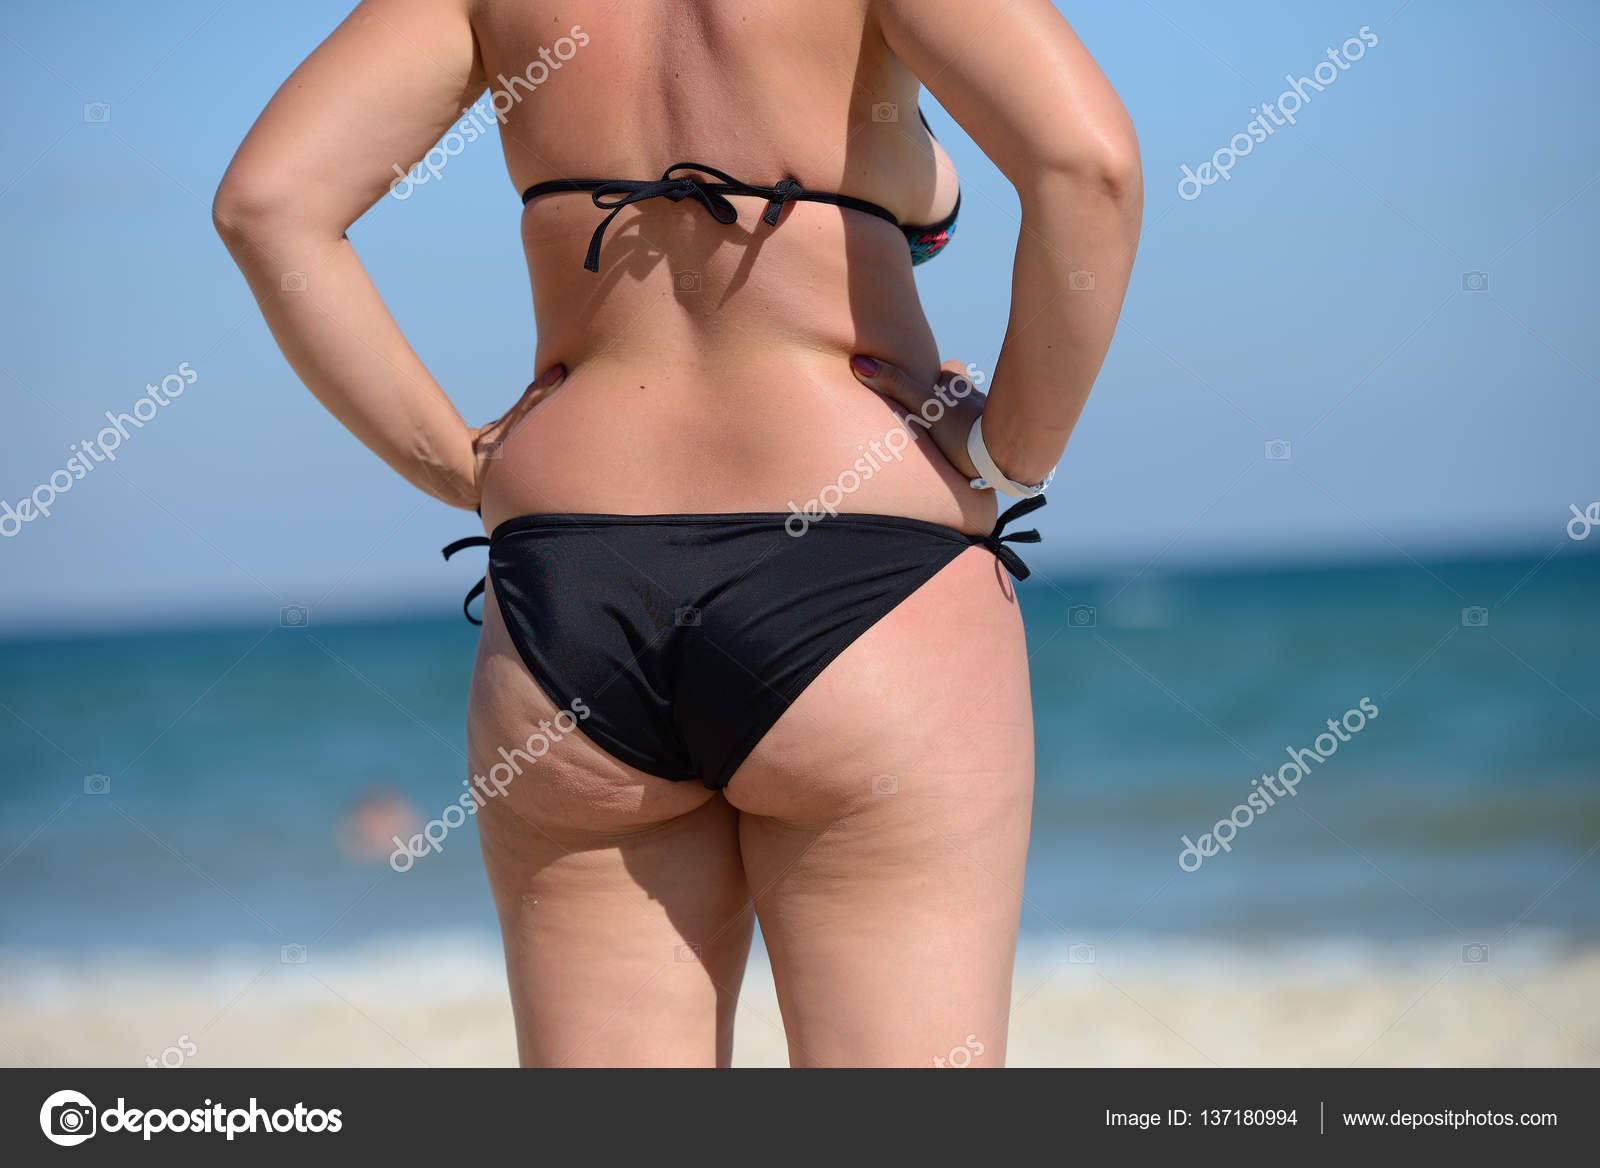 Избыточный вес молодой женщины в купальнике у моря, глядя на 